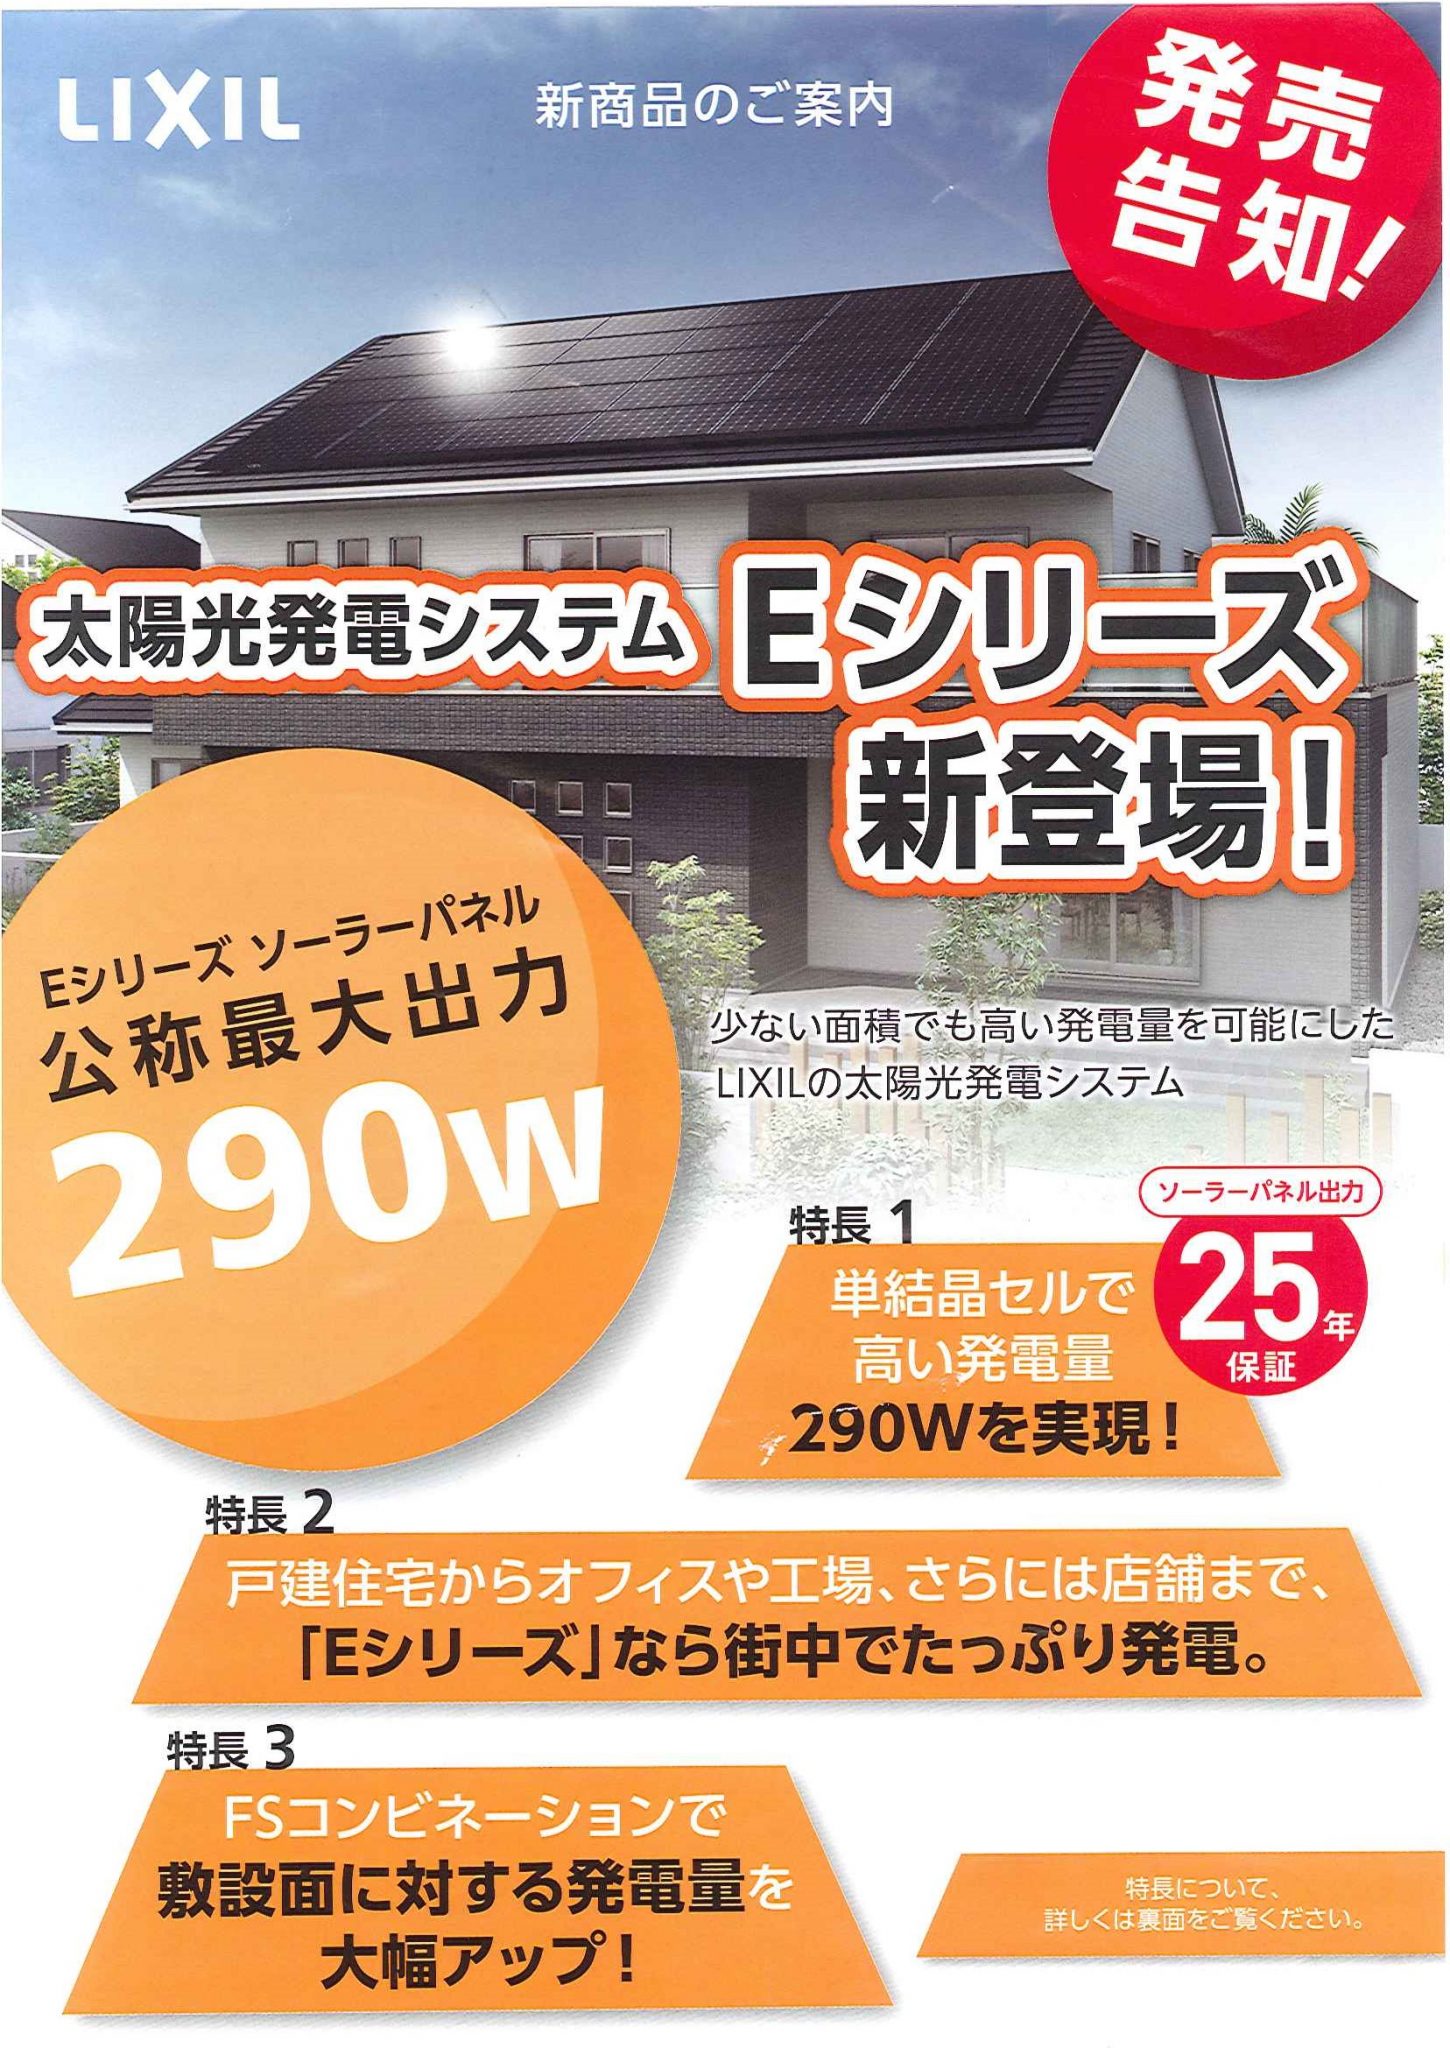 ゼロエミッション住宅の勧め 高効率太陽光パネル Lixil Eシリーズ 販売 横浜 湘南で建築ならメディックへ